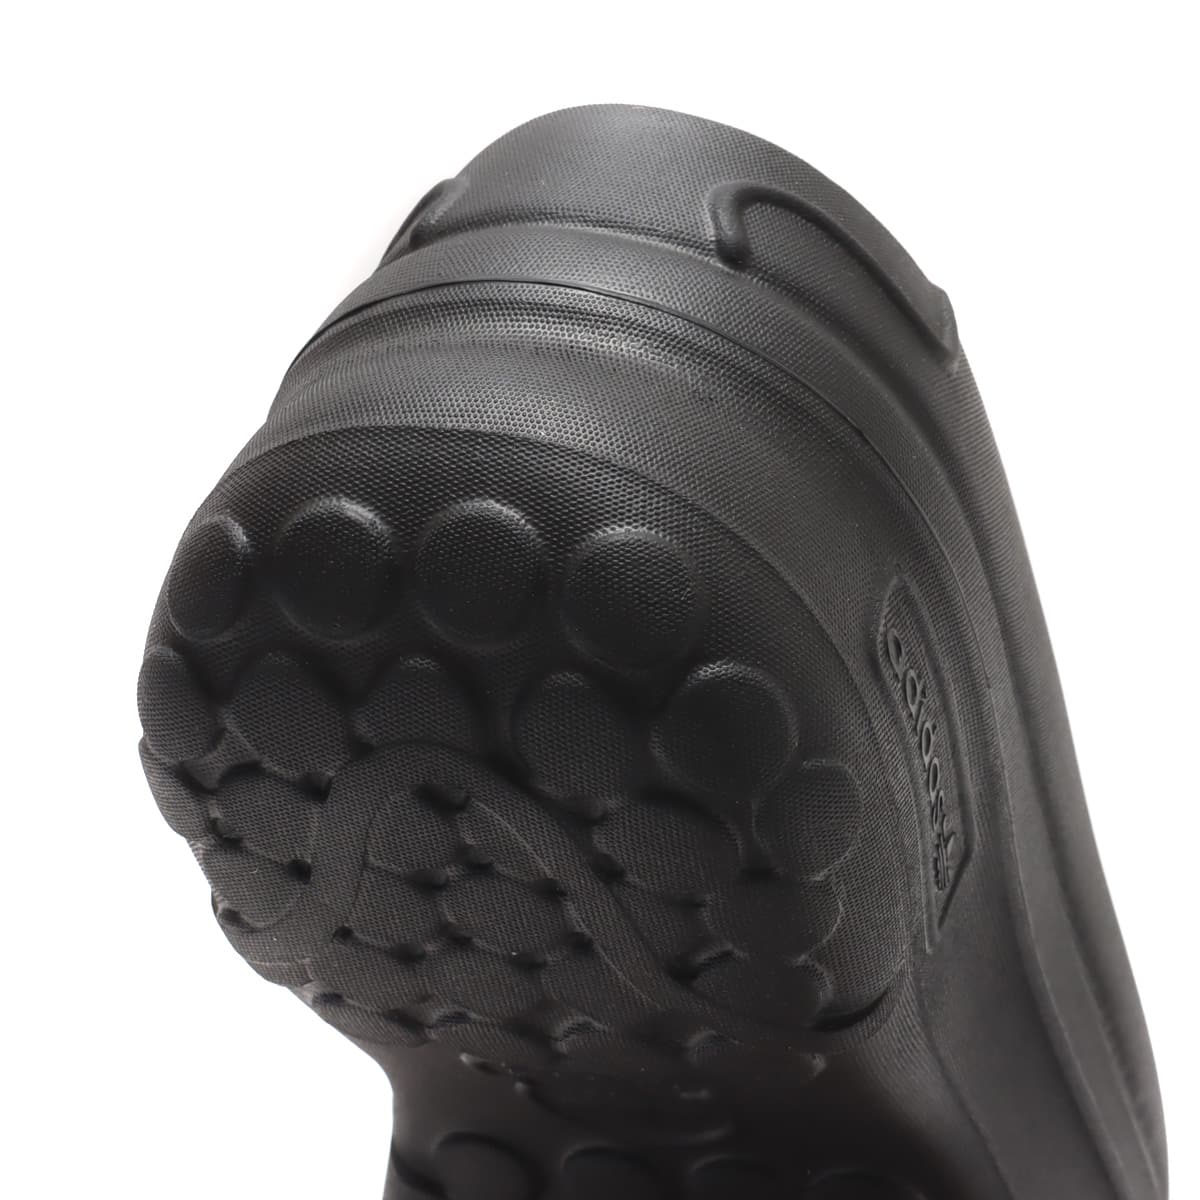 【新品未使用】adidasアディダスタンスミスミュール黒ブラックKing Gnu